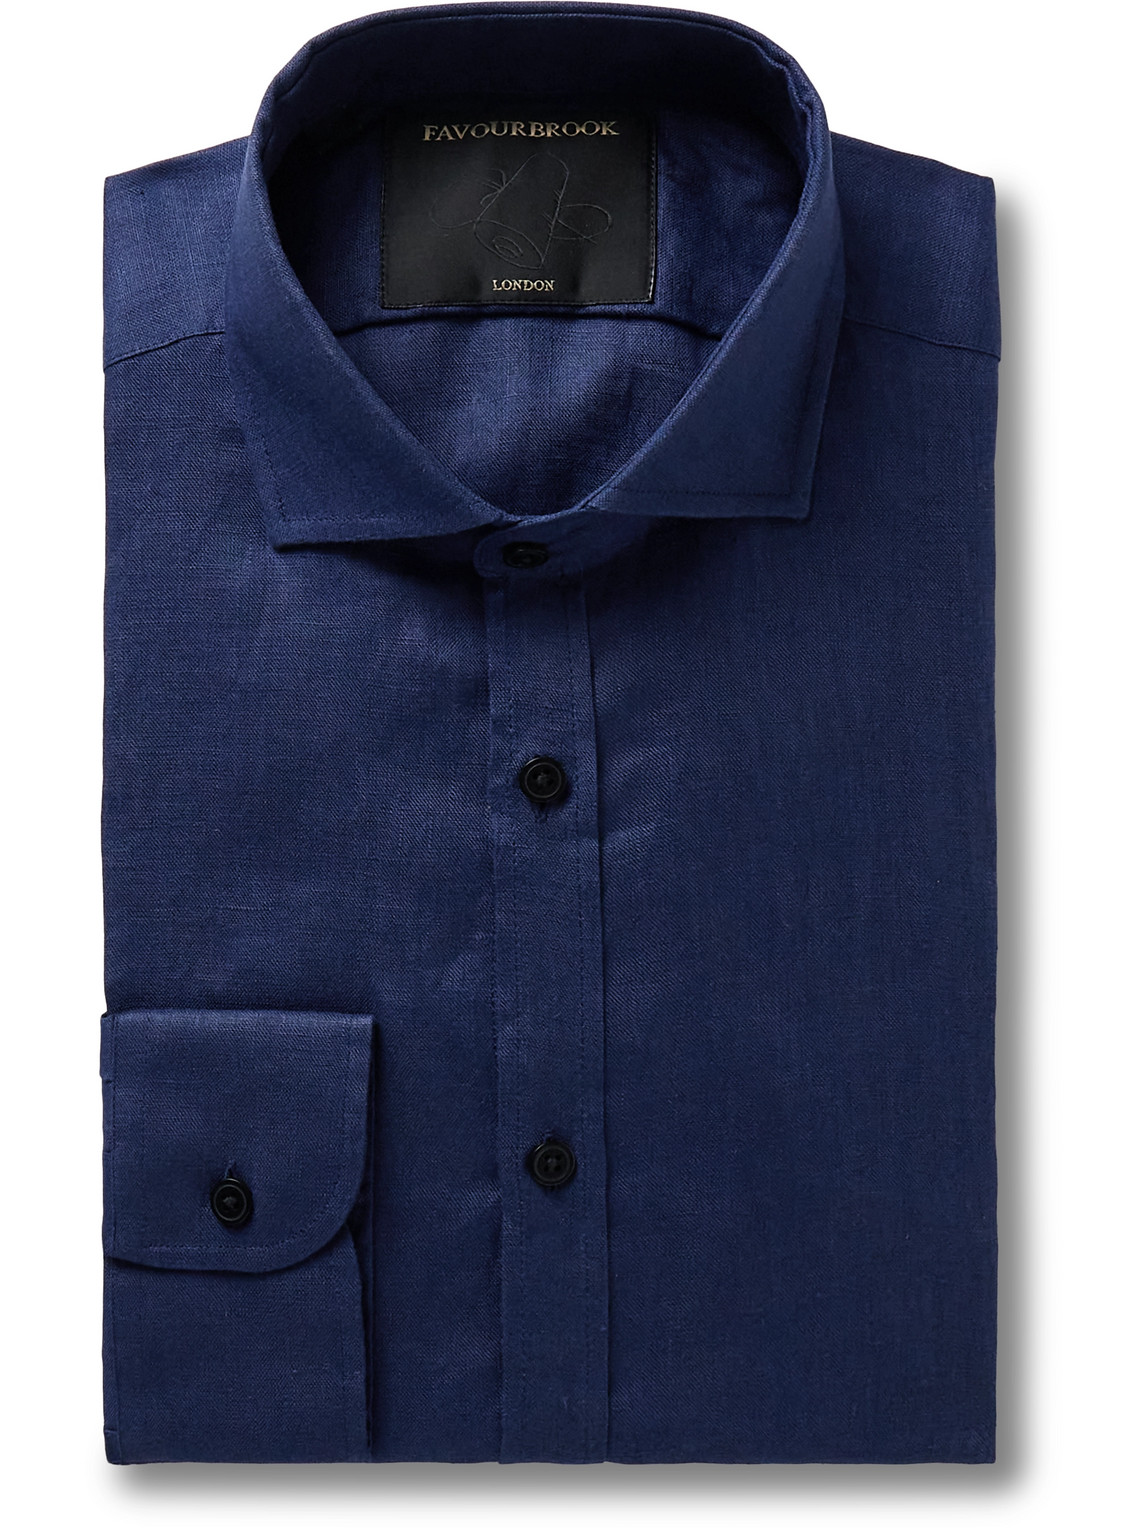 Bridford Cutaway-Collar Linen Shirt